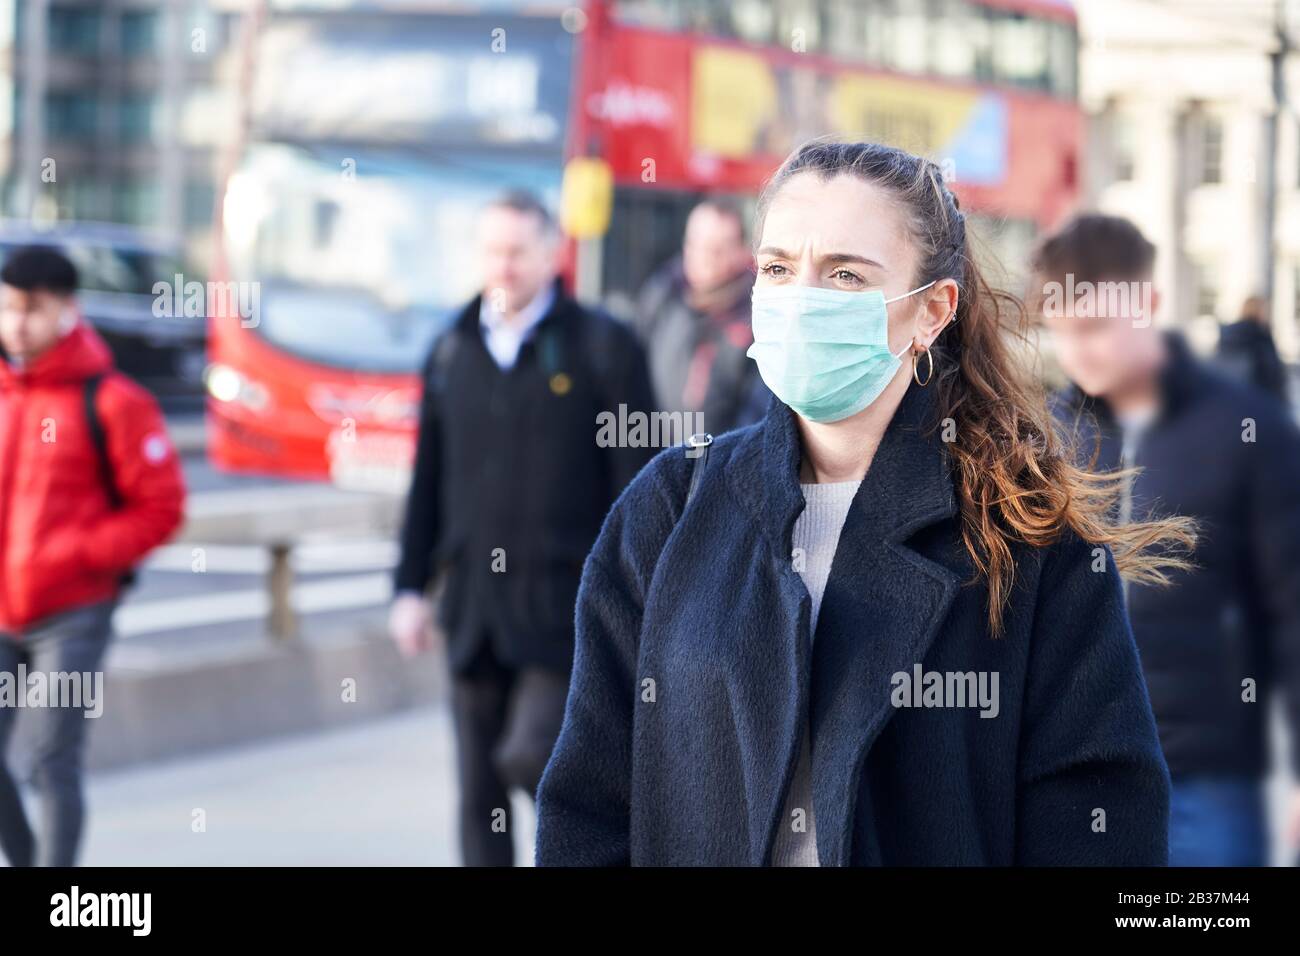 Junge Frau, die Gesichtsmaske trägt, während sie in den Straßen Londons spazieren ging Stockfoto